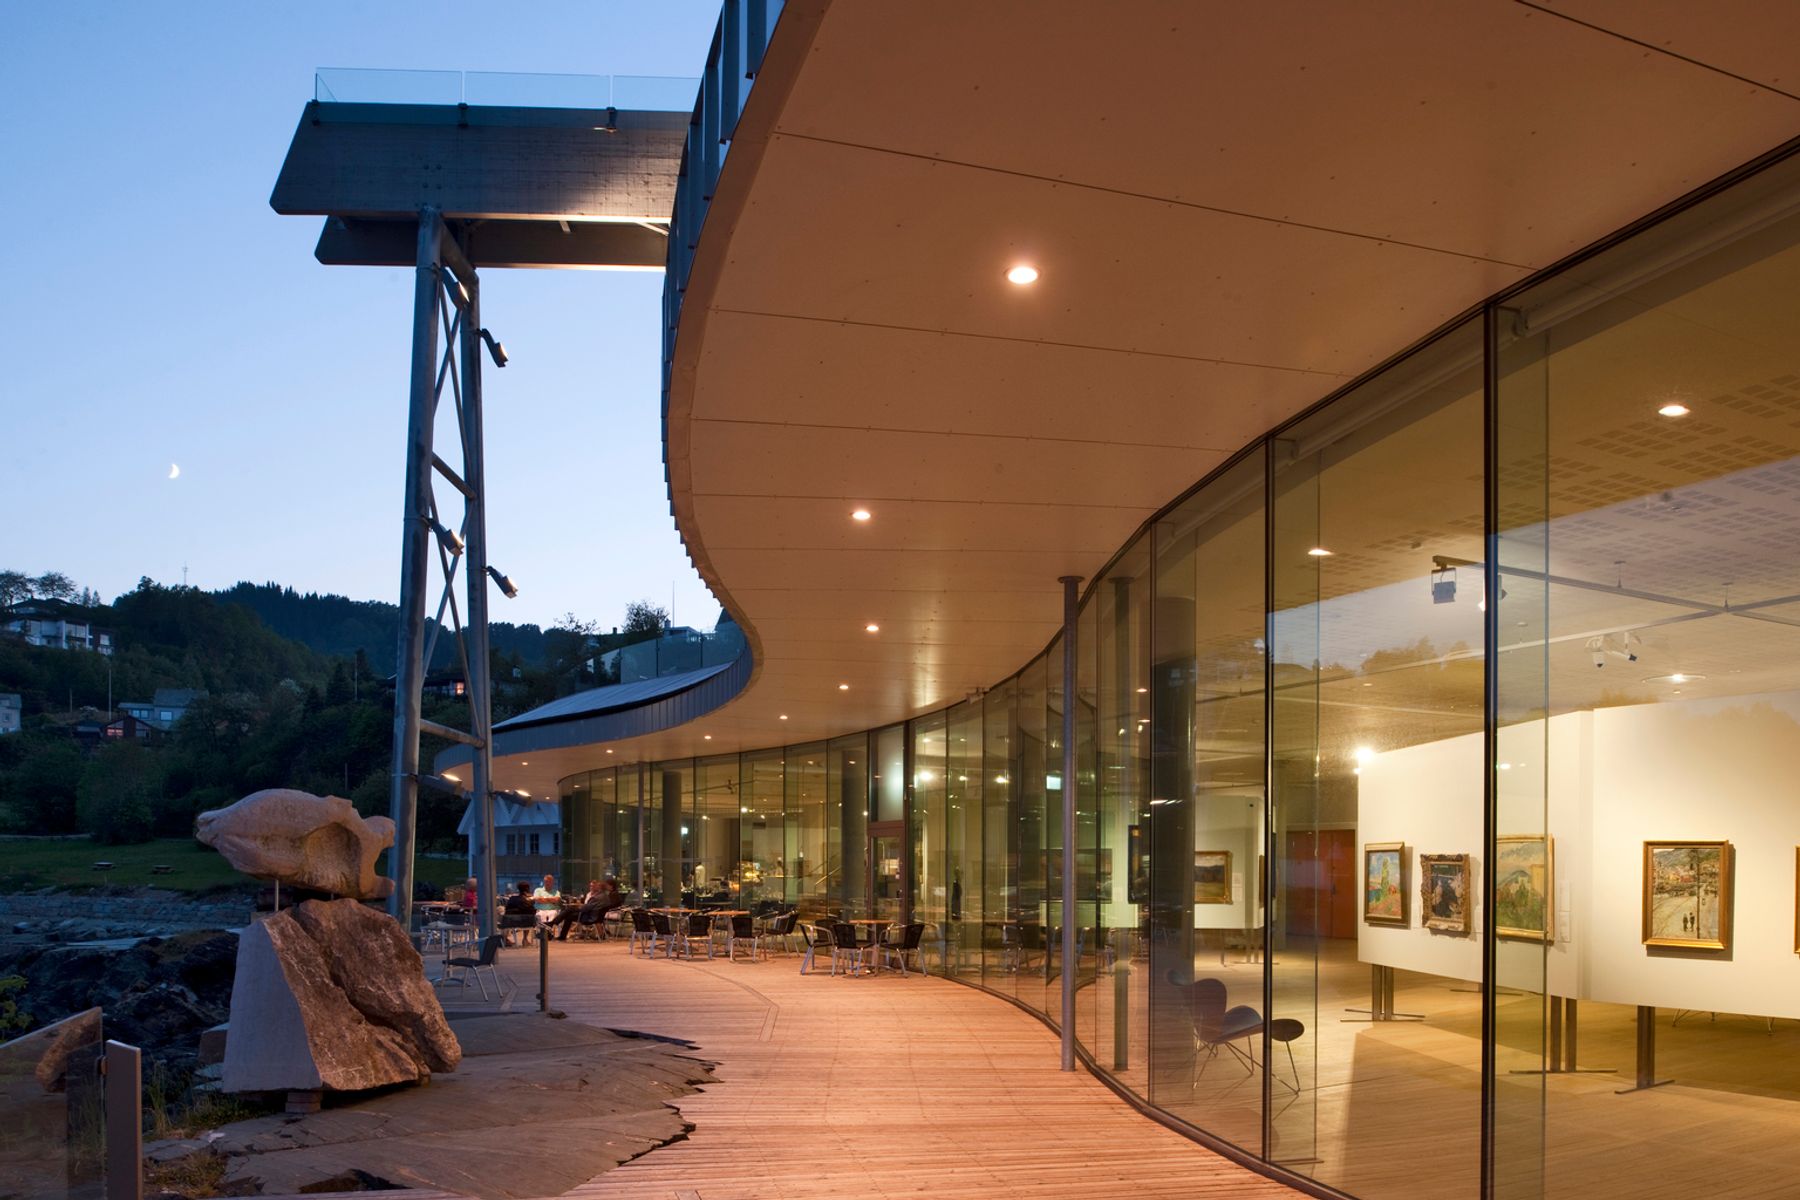 Oseana Art & Culture Center, Os. Architektur: Grieg Arkitekter, Bergen. Lichtplanung: Multiconsult AS. Fotografie: Thomas Mayer, Neuss.